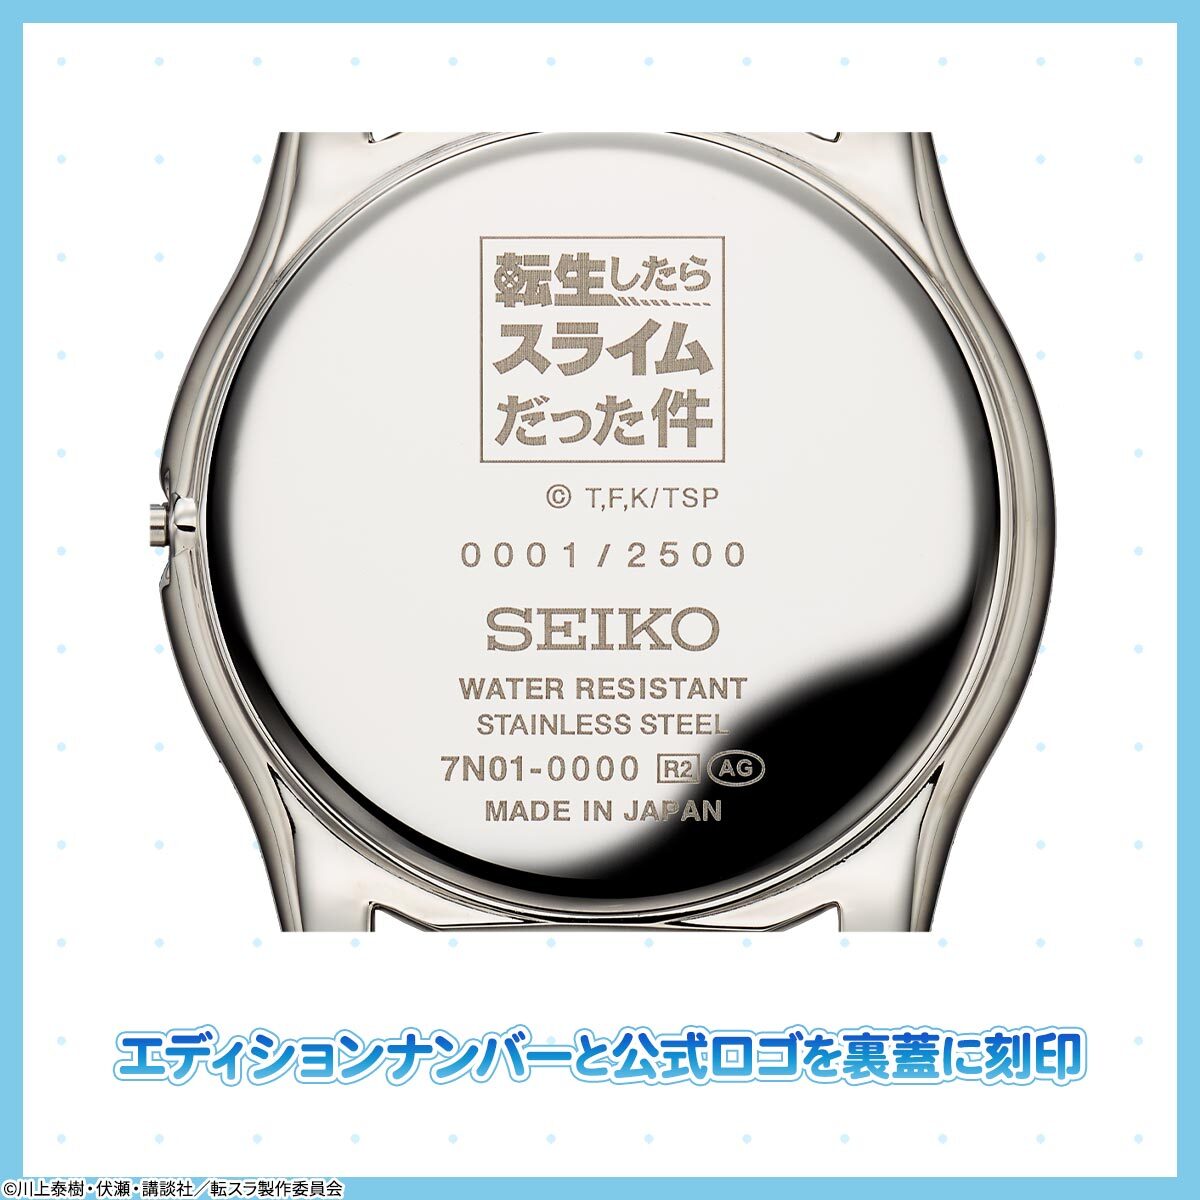 欲しいの 転スラ×SEIKO コラボ時計 - 腕時計(アナログ) - revista 